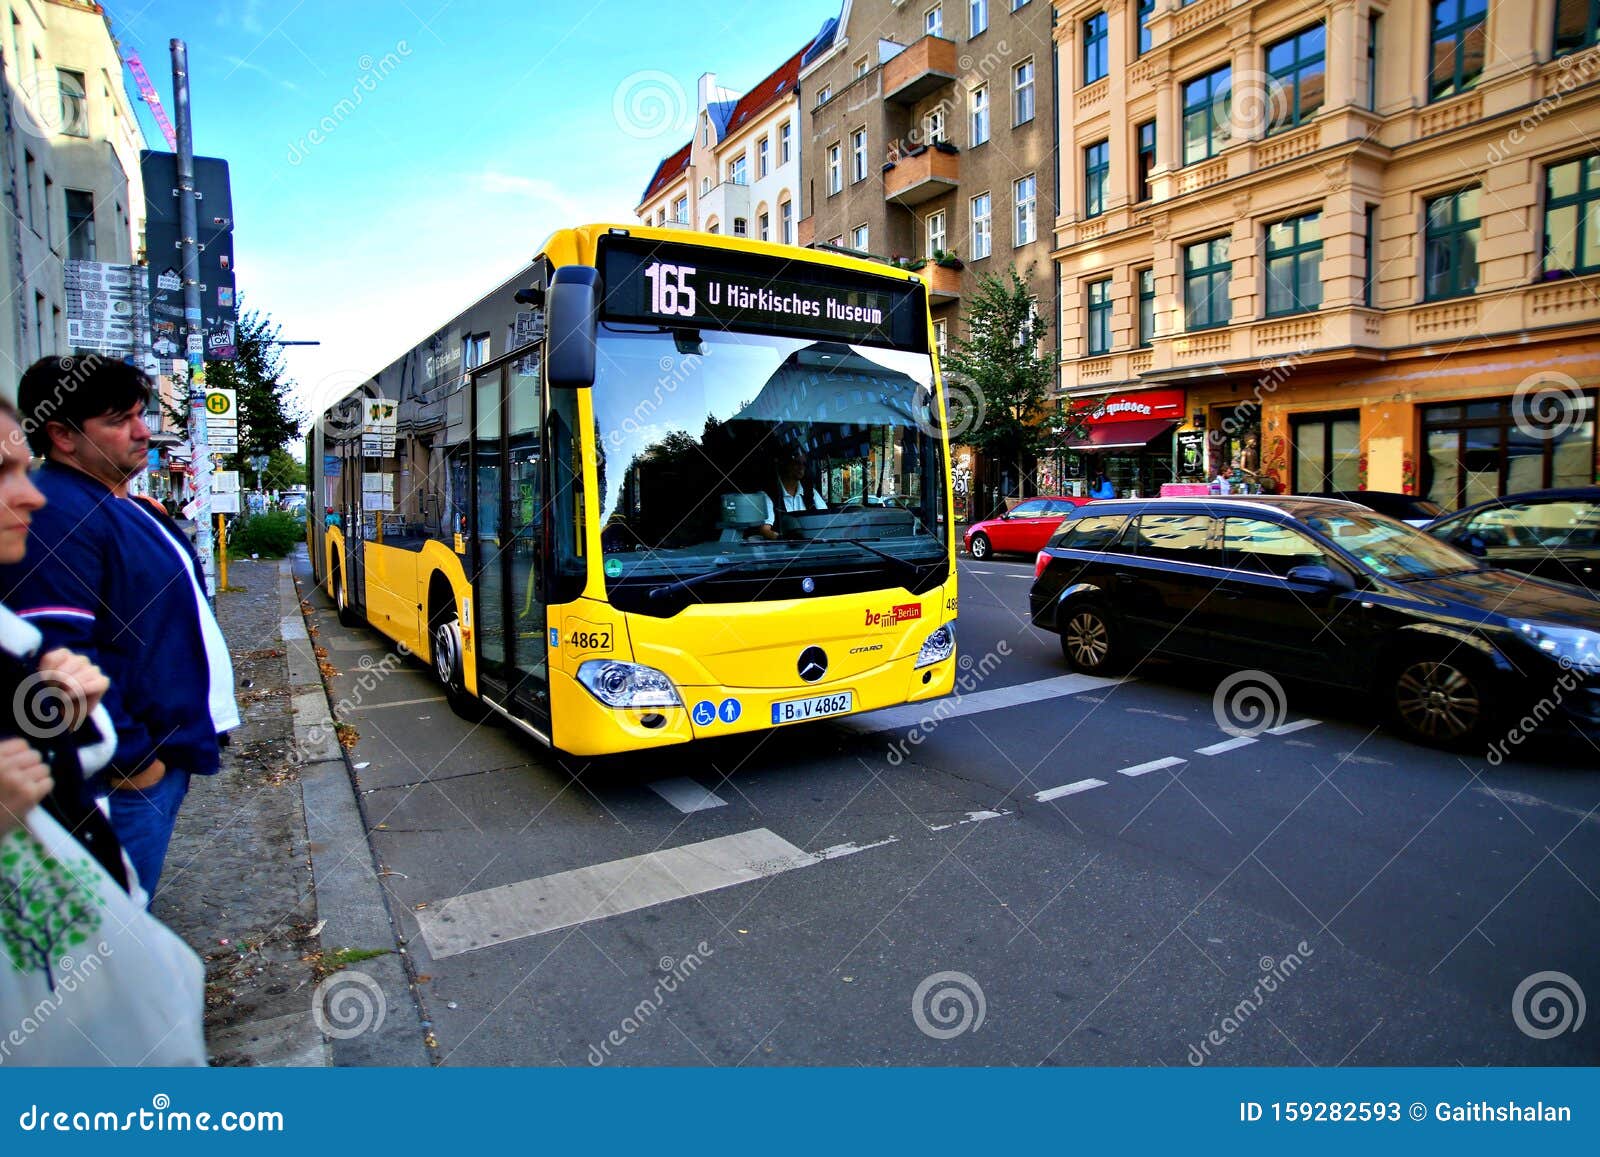 Helemaal droog nikkel terwijl De Bus Voor Het Openbaar Vervoer in Berlijn Duitsland Redactionele Stock  Foto - Image of europees, voertuig: 159282593